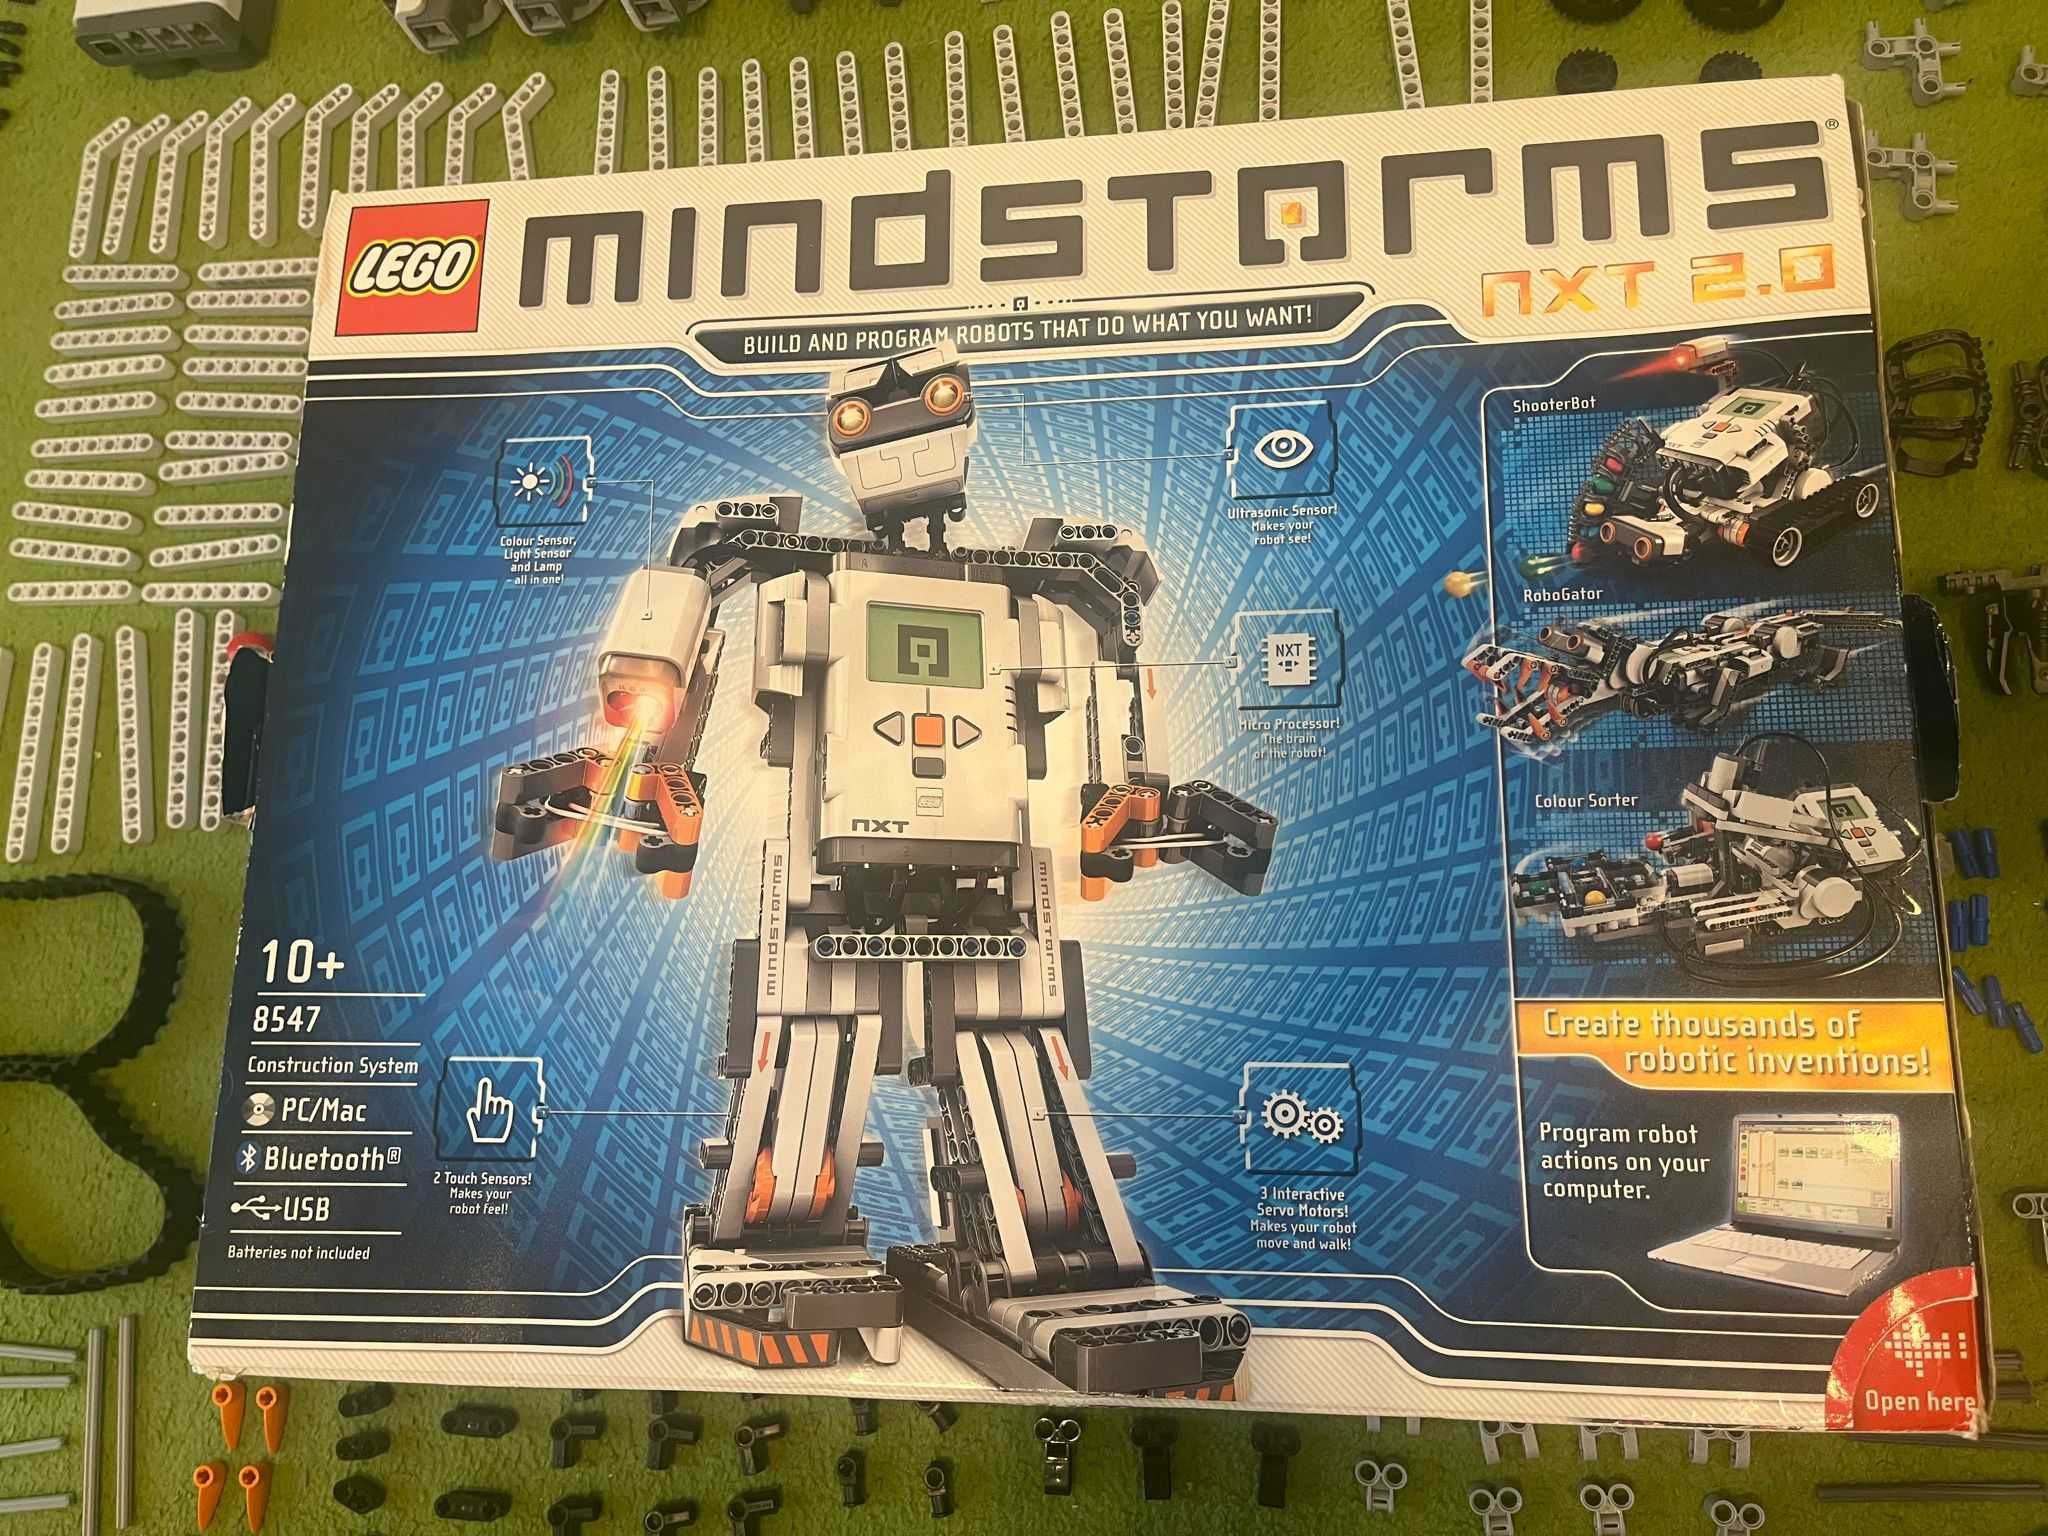 8547 Lego Mindstorm nxt 2.0